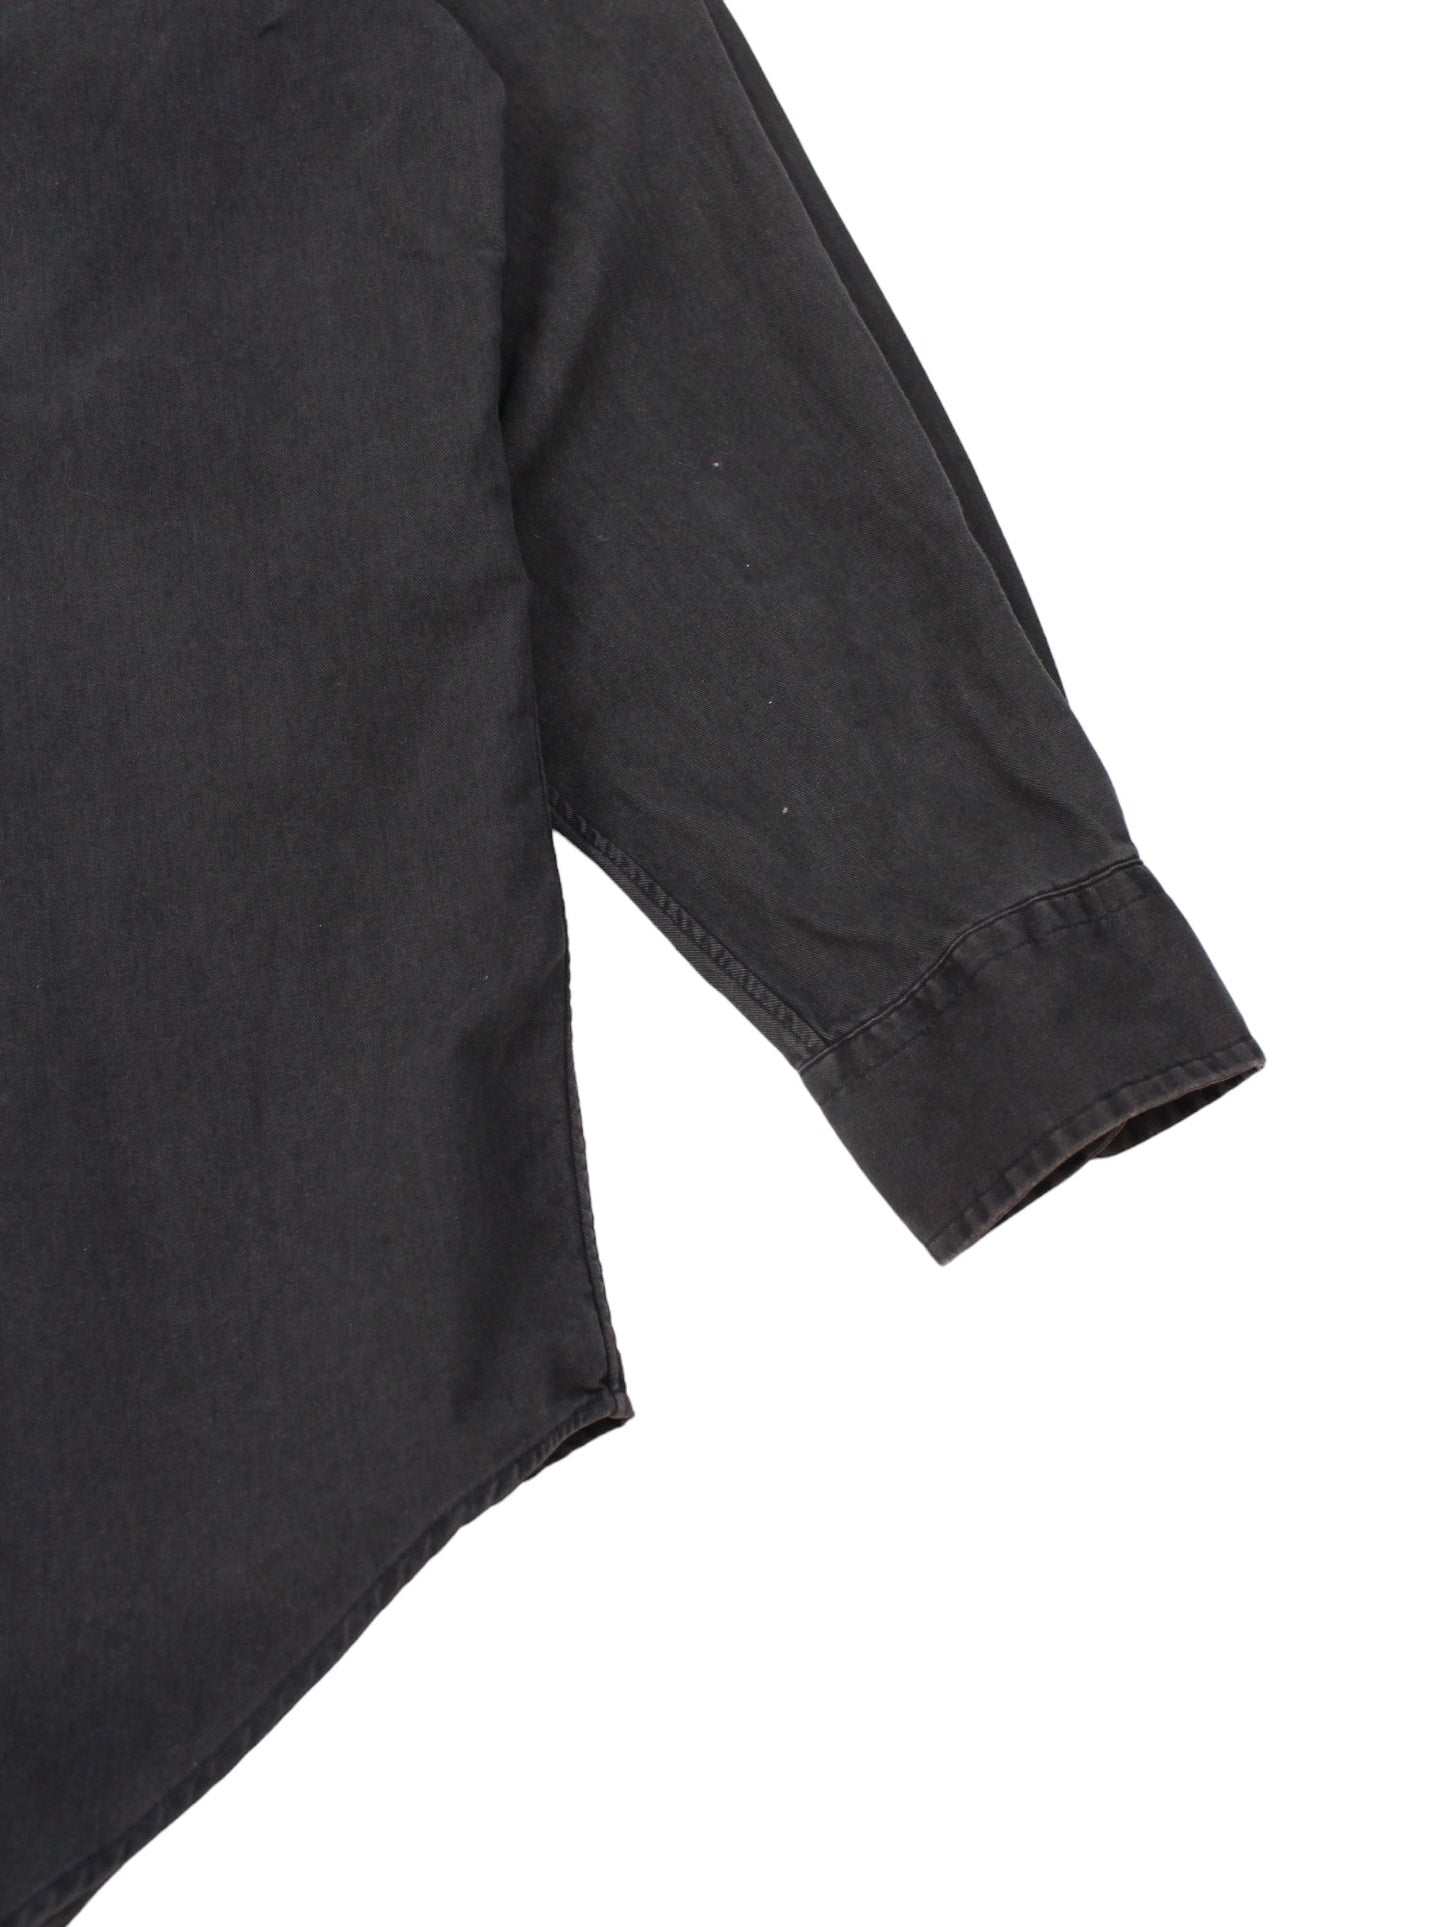 90s Polo Ralph Lauren Black Heavyweight Shirt (XL)